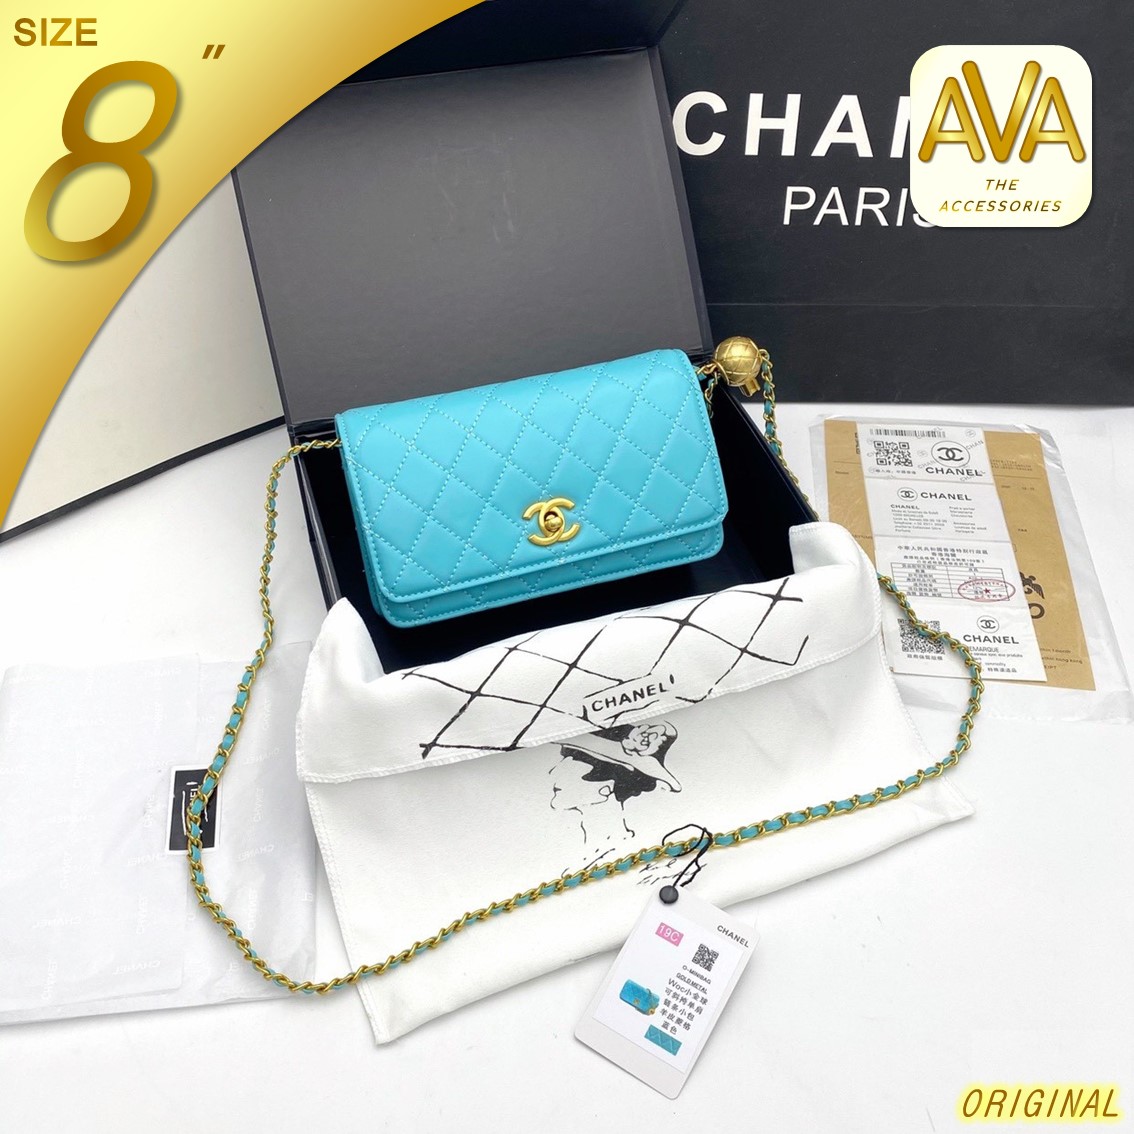 AVA Thailand - C H A N E L_Pearl Clutch Wallet on Chain กระเป๋าถือ กระเป๋าสตางค์พร้อมสายละพาย ขนาด 8 นิ้ว⭐⭐⭐⭐⭐แมทช์ง่ายได้กับทุกลุค สวยครบจบเลย??พร้อมกล่อง